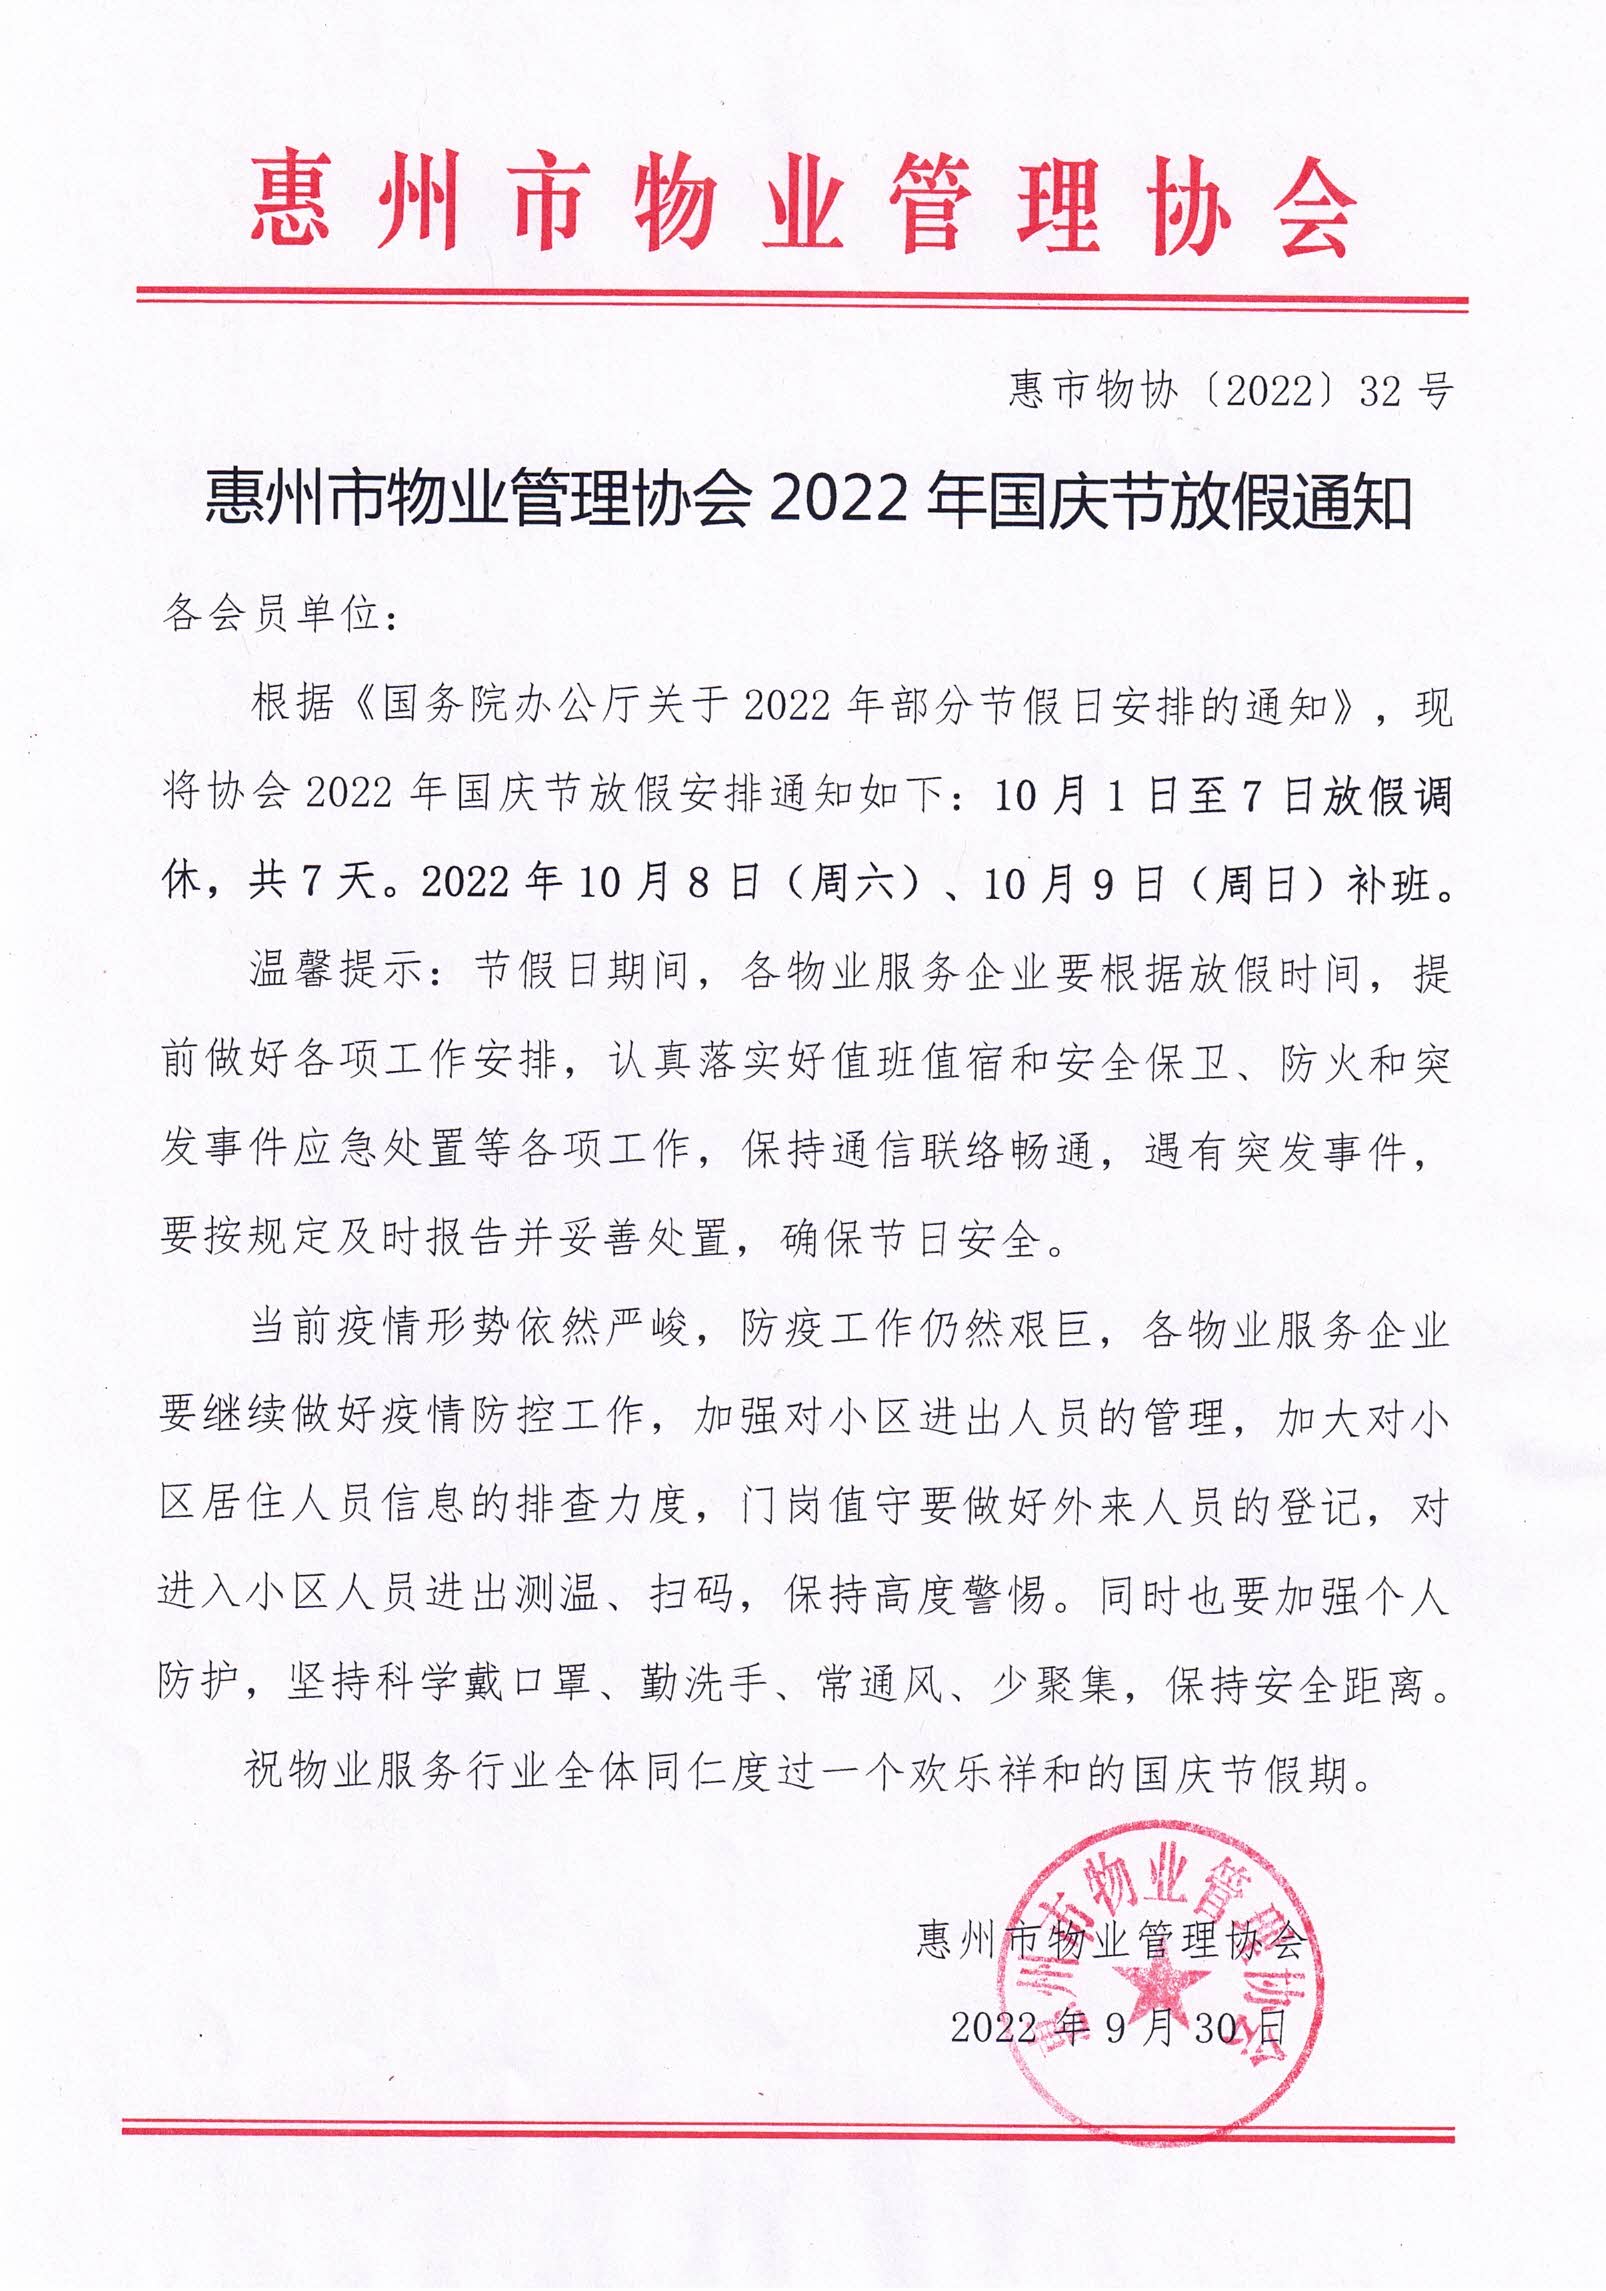 惠州市物业管理协会2022年国庆放假通知.jpg